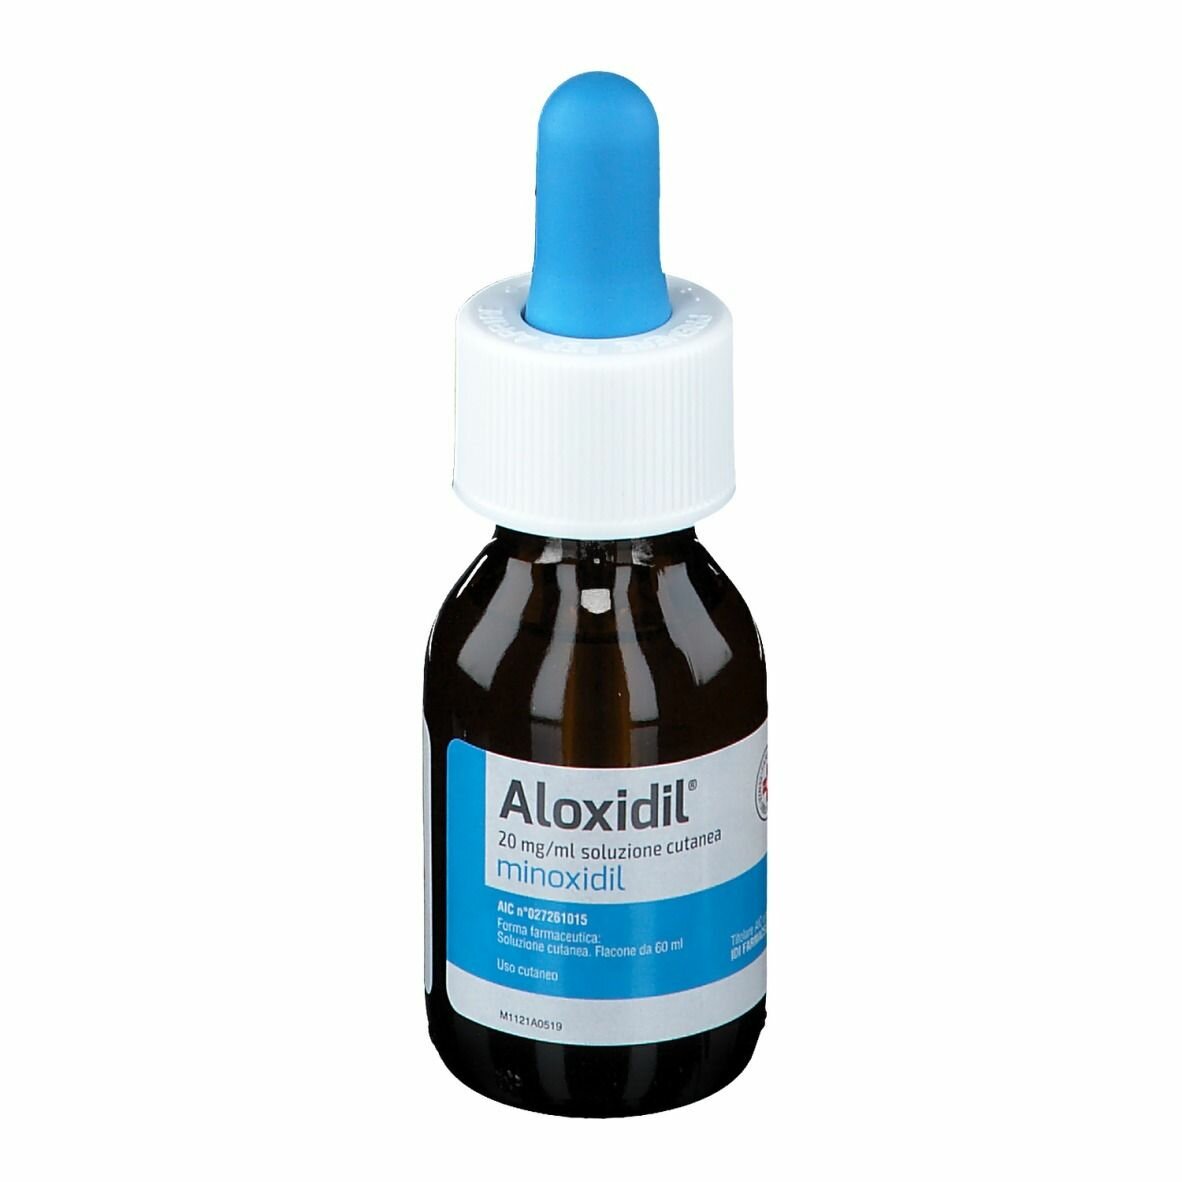 Aloxidil soluzione 2% minoxidil alopecia 60 ml img